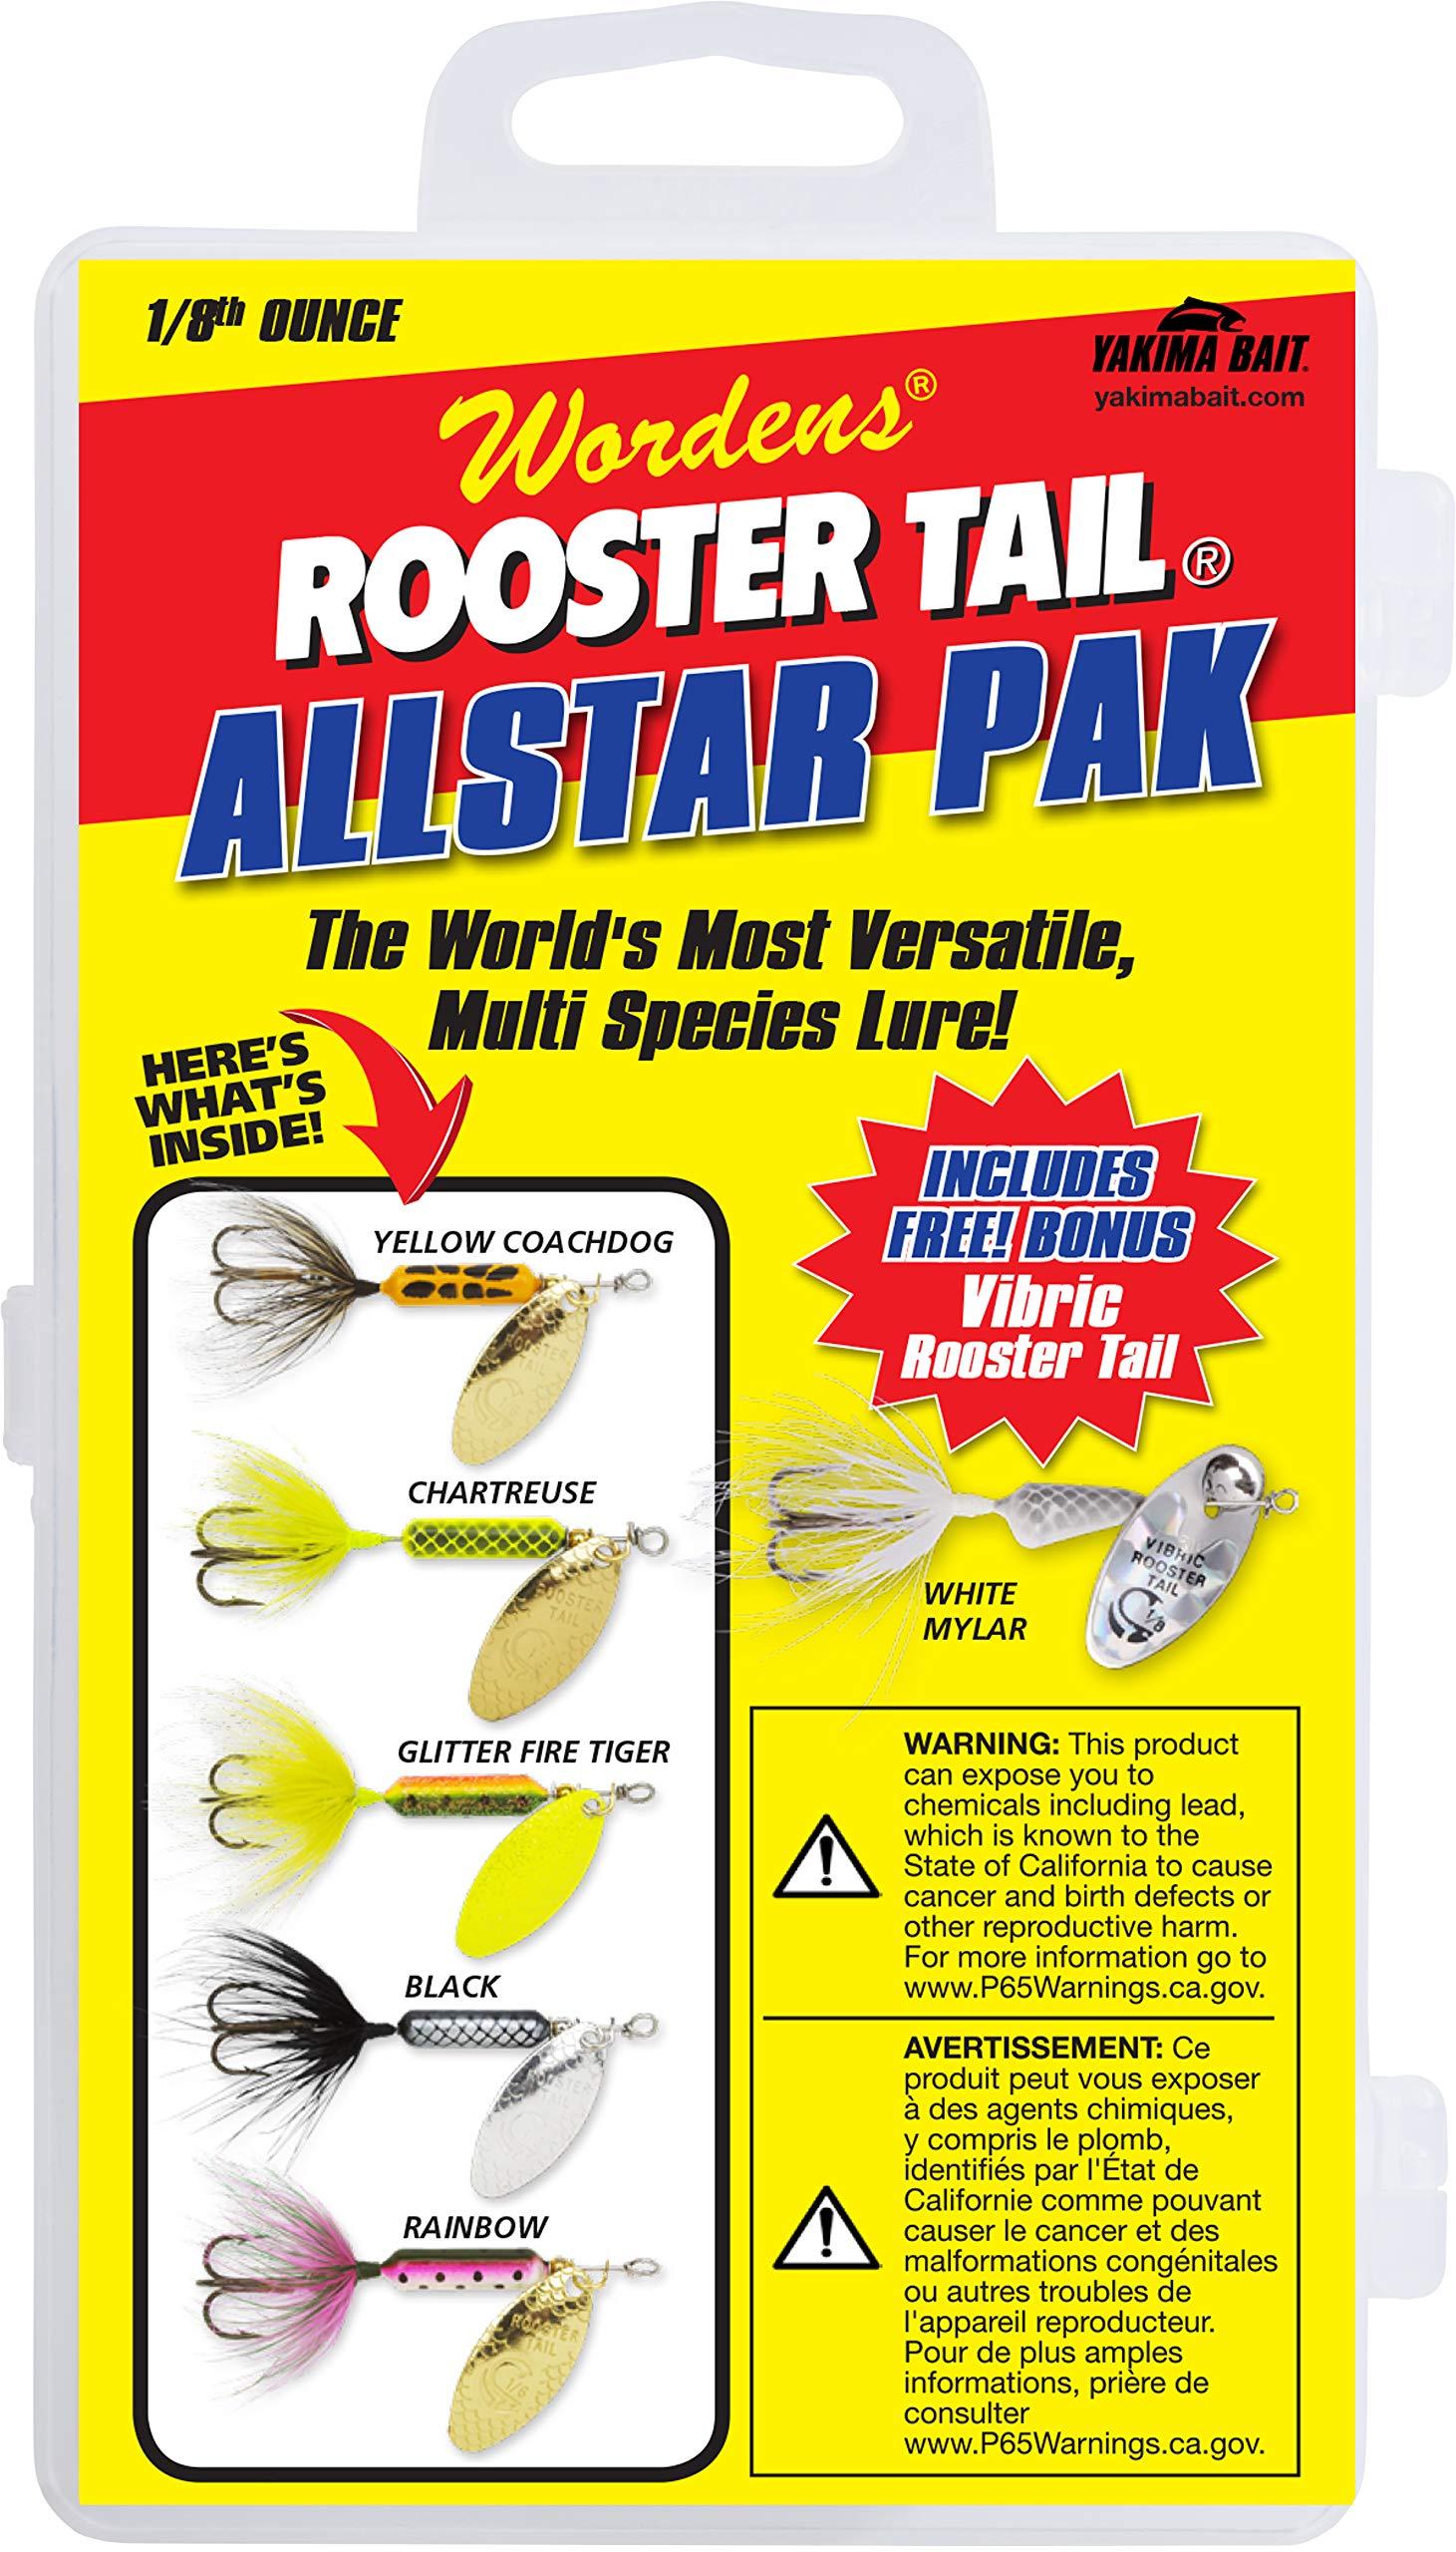 Yakima Bait Rooster Tail Spinner Box Kit. Allstar Pak